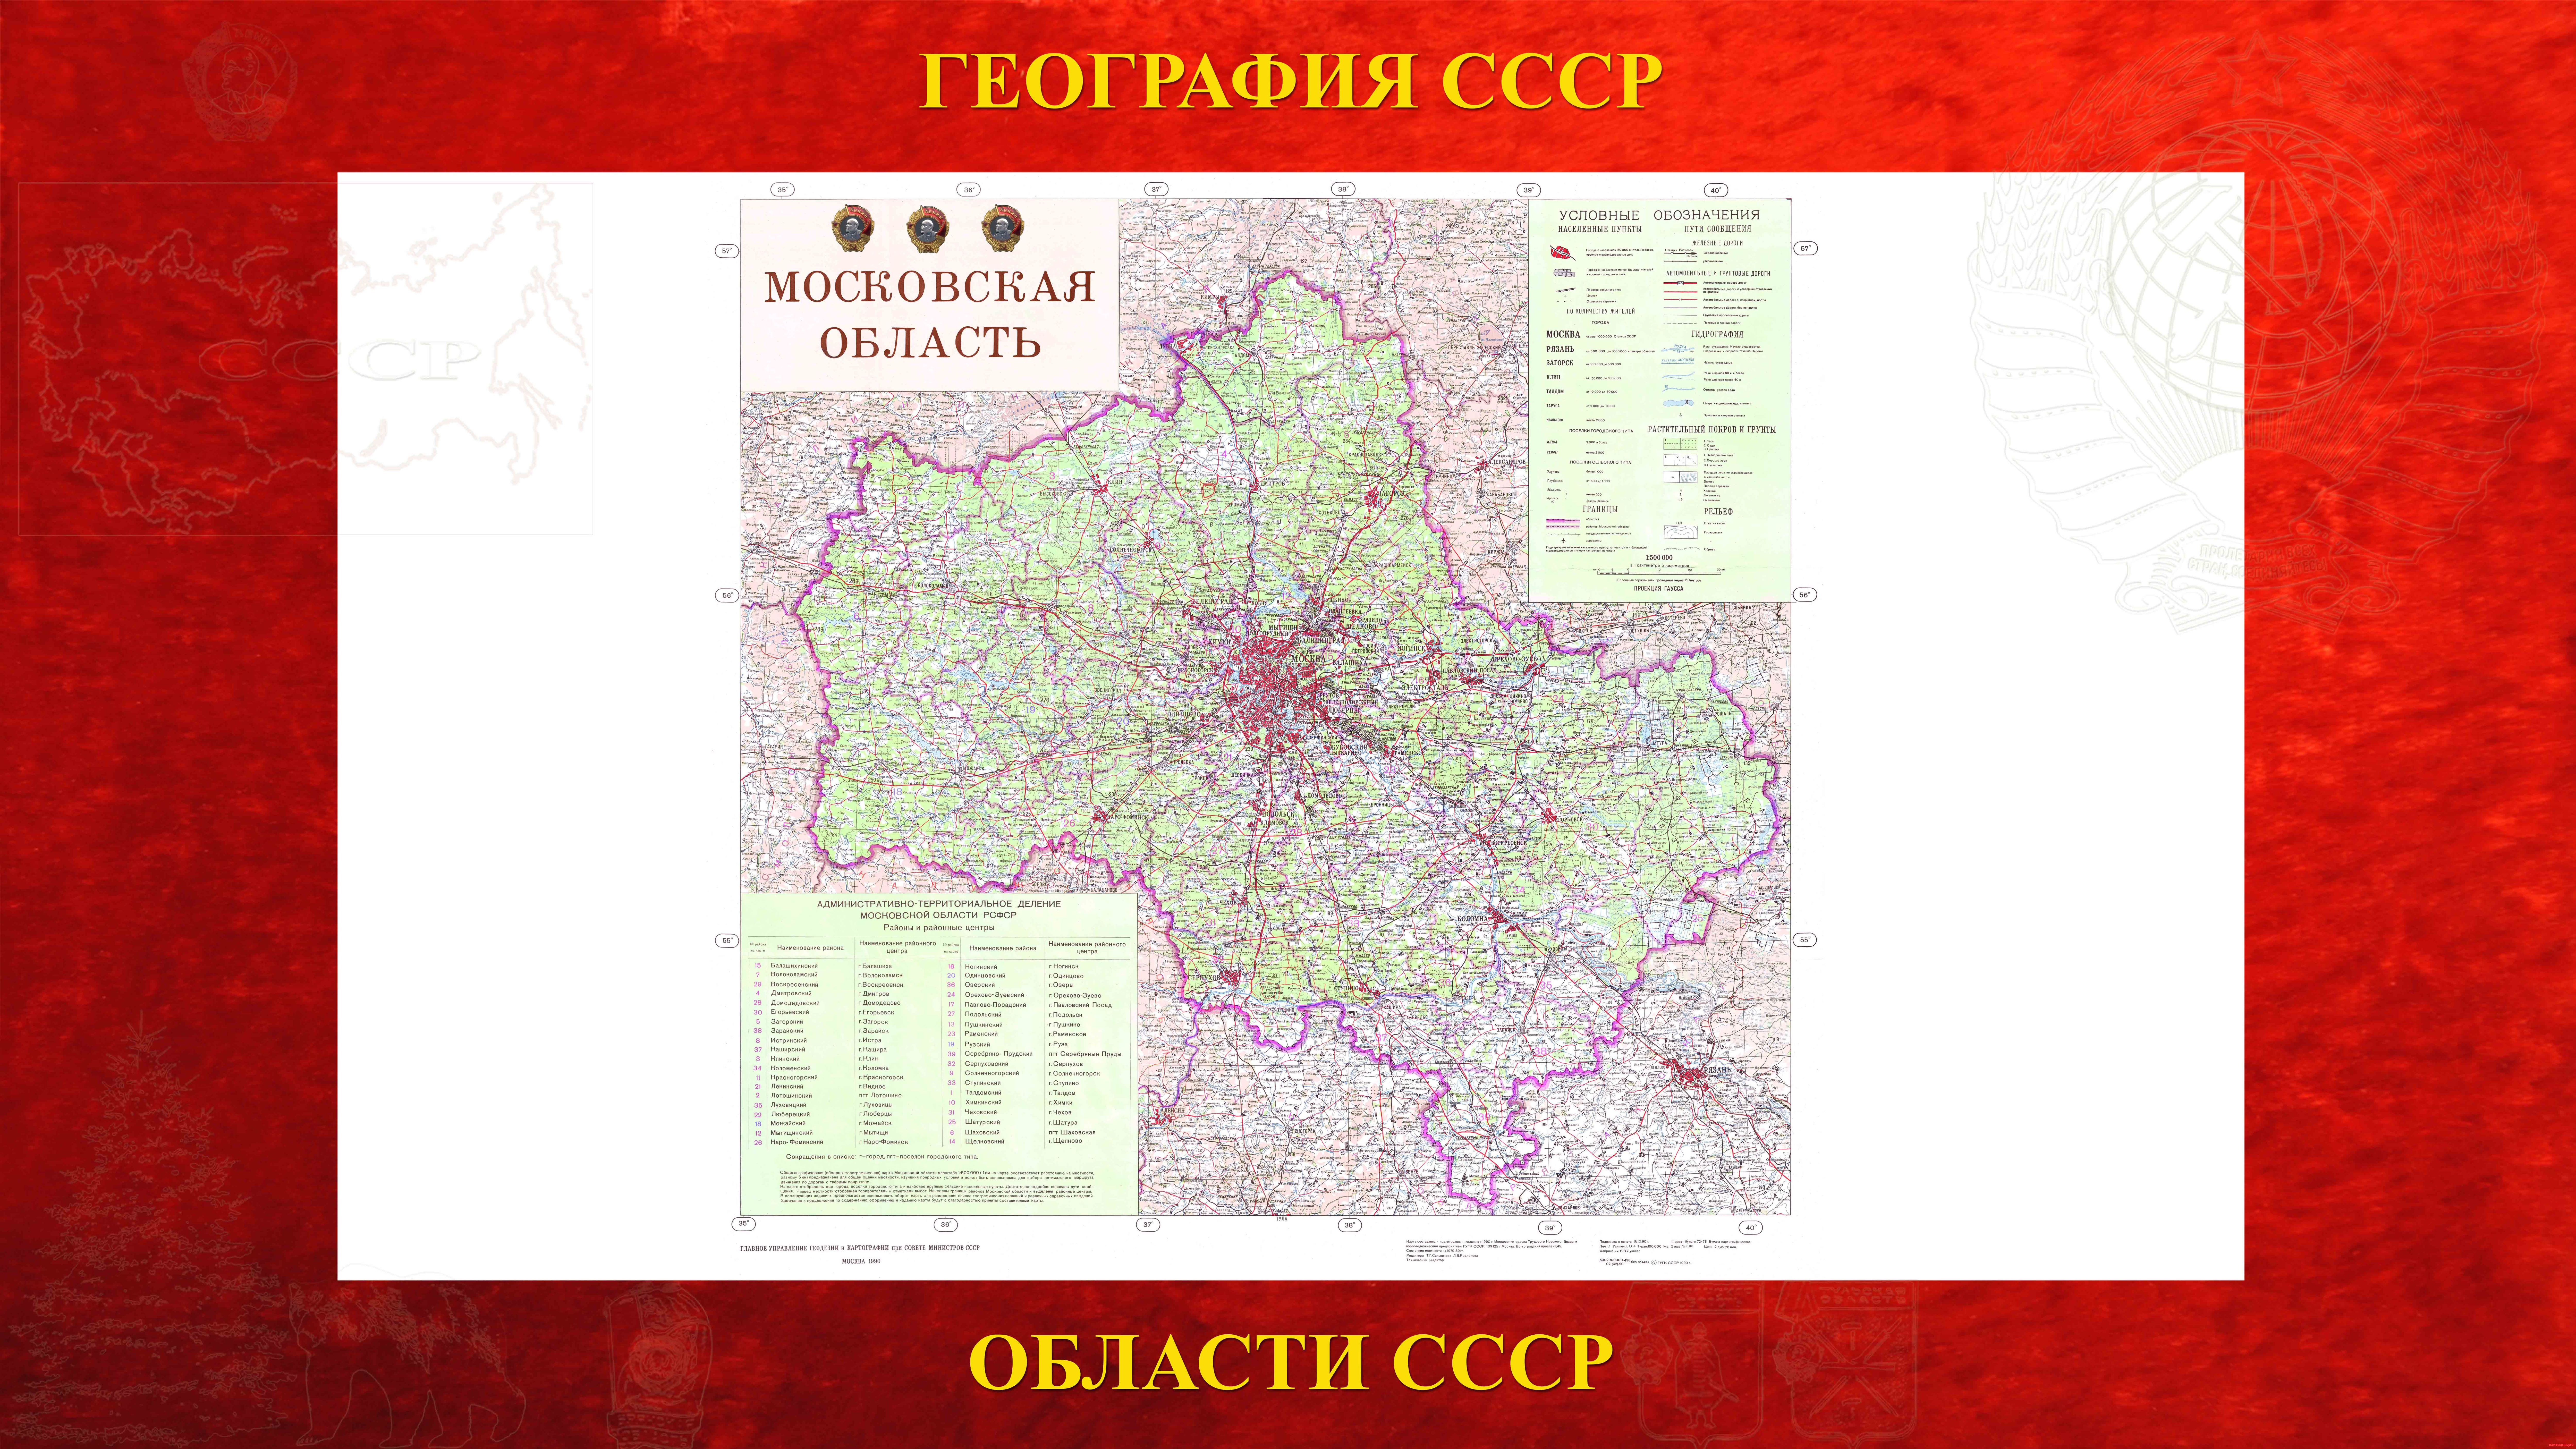 Московская область — Областной центр РСФСР в составе СССР (14.01.1929)